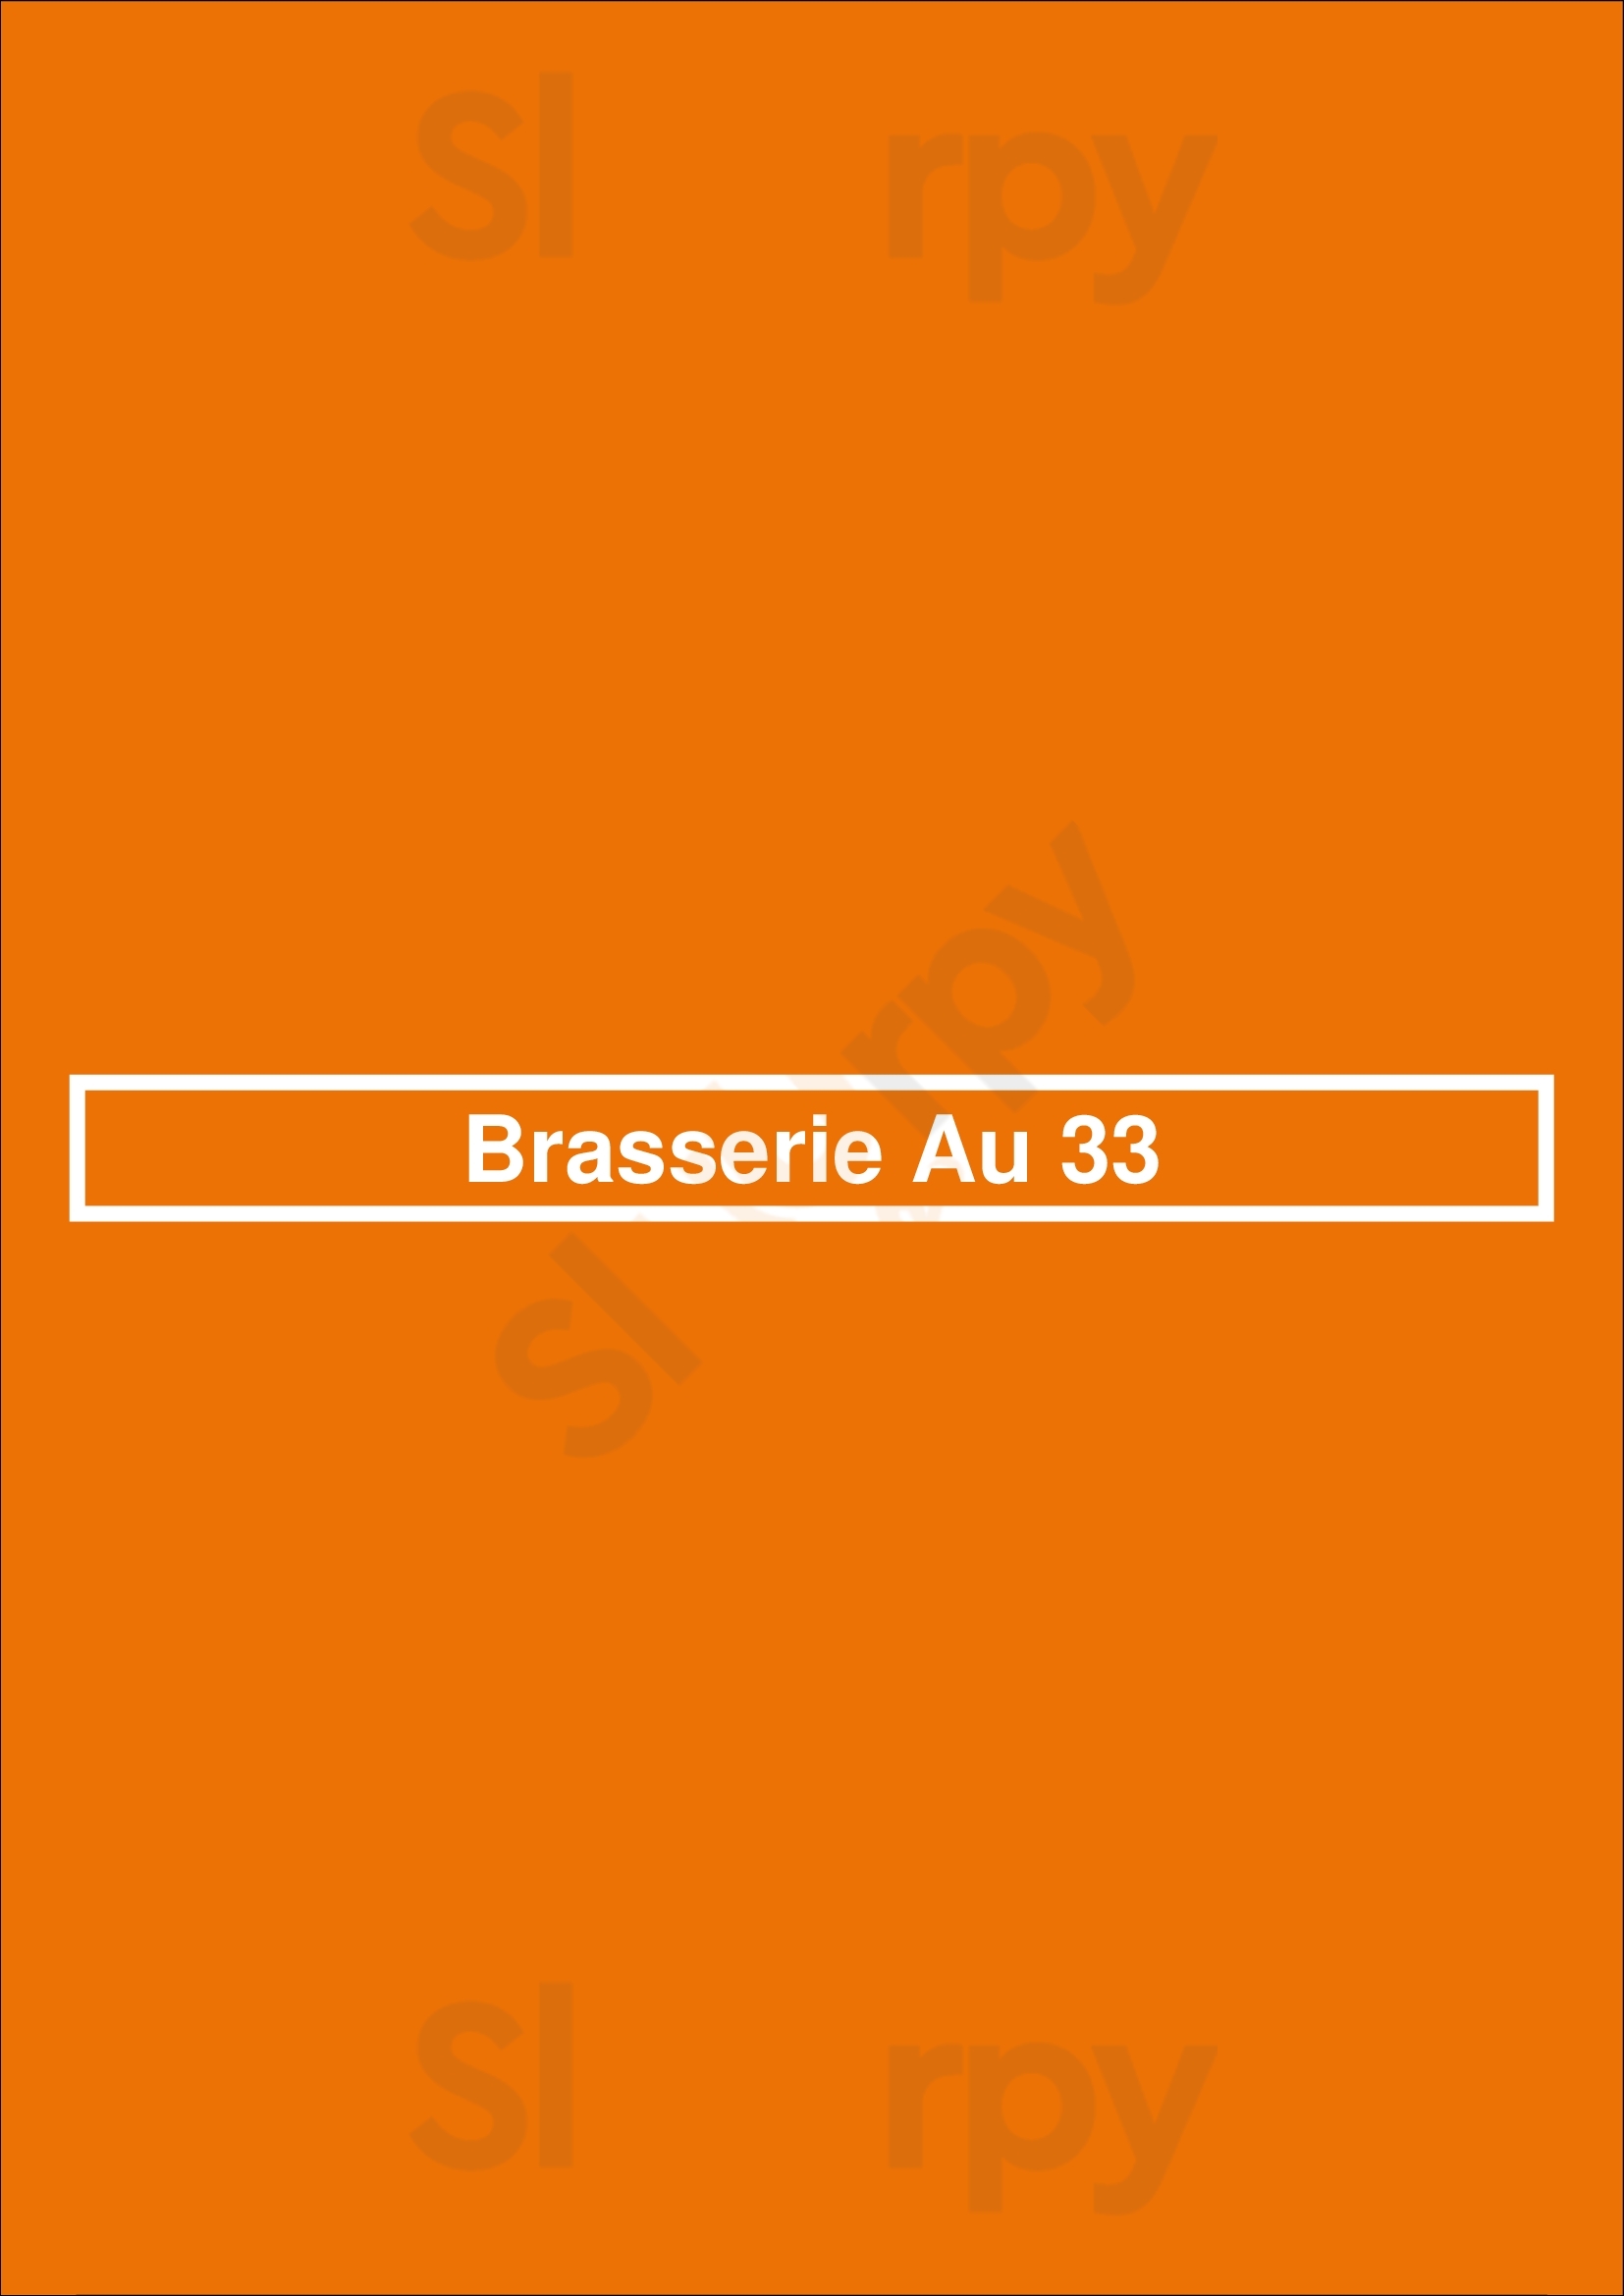 Brasserie Au 33 Bordeaux Menu - 1